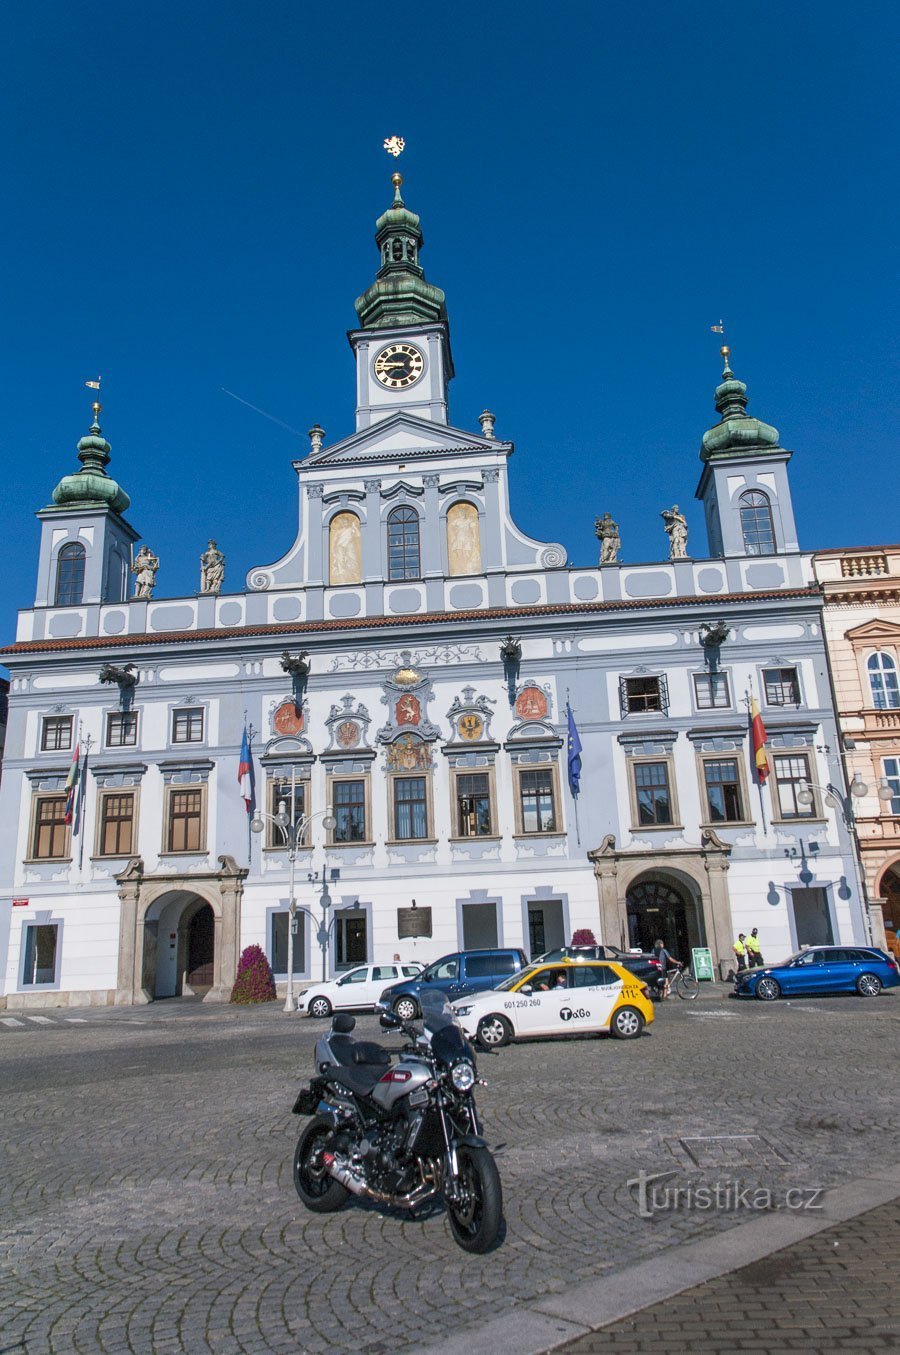 Budejovice Town Hall